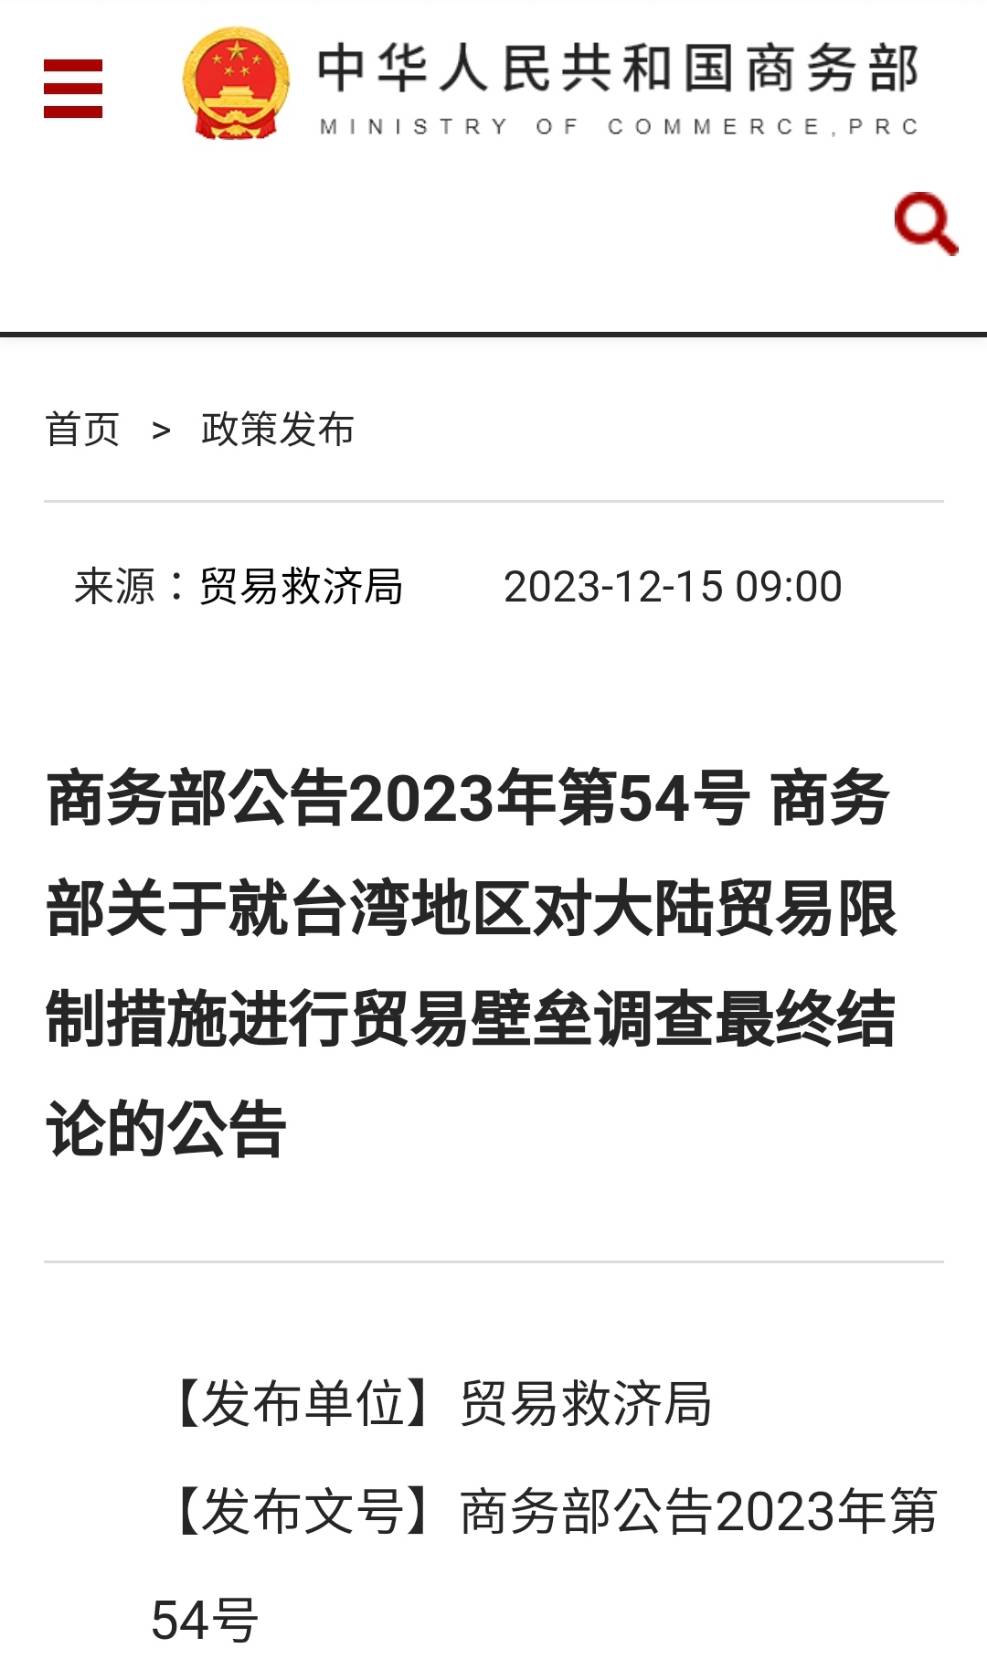 大陸商務部確認台灣對陸構成貿易壁壘 尚未公布制裁清單